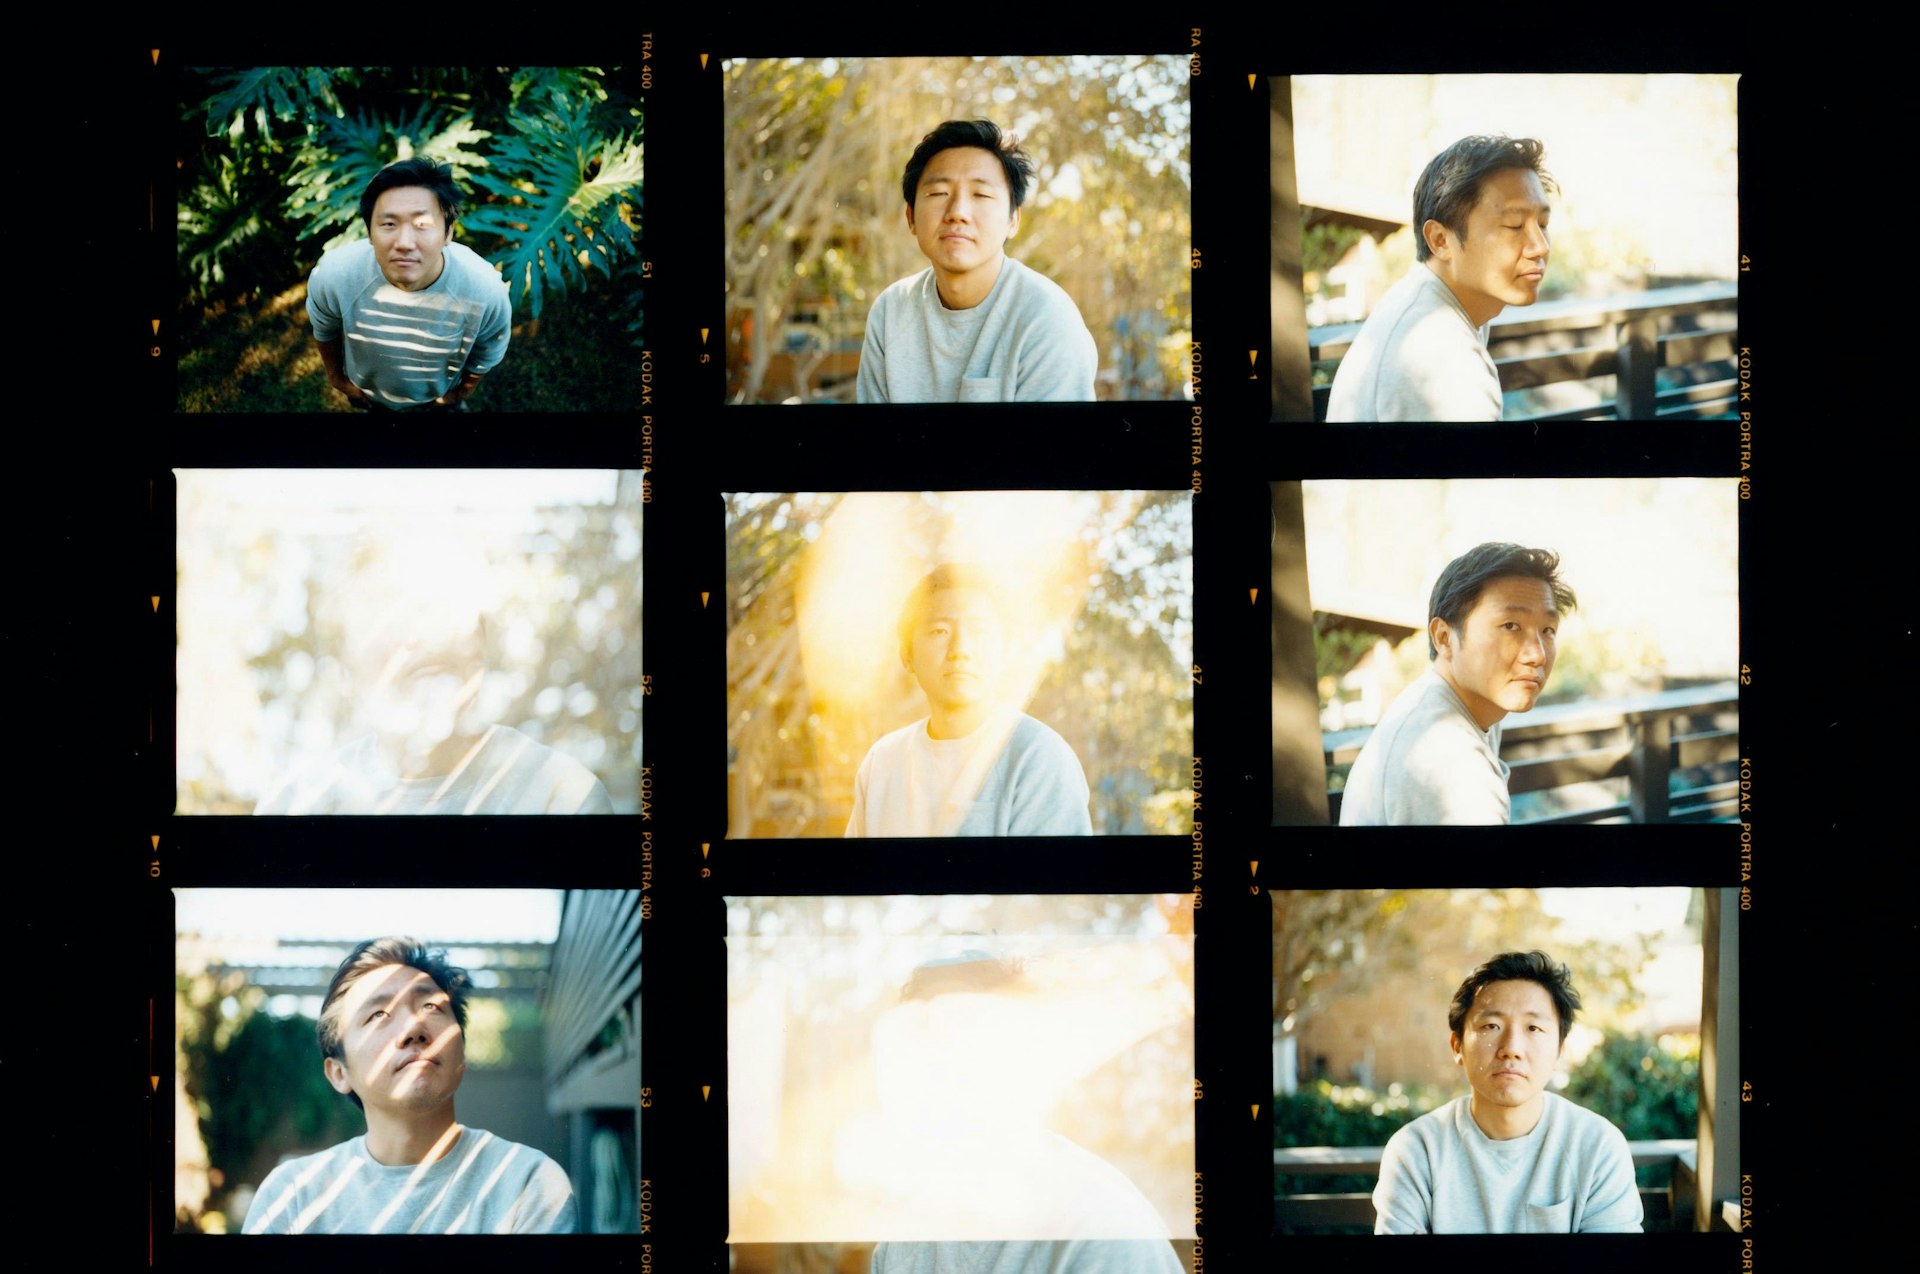 Hiro Murai’s filmmaking offers a fresh look at modern angst